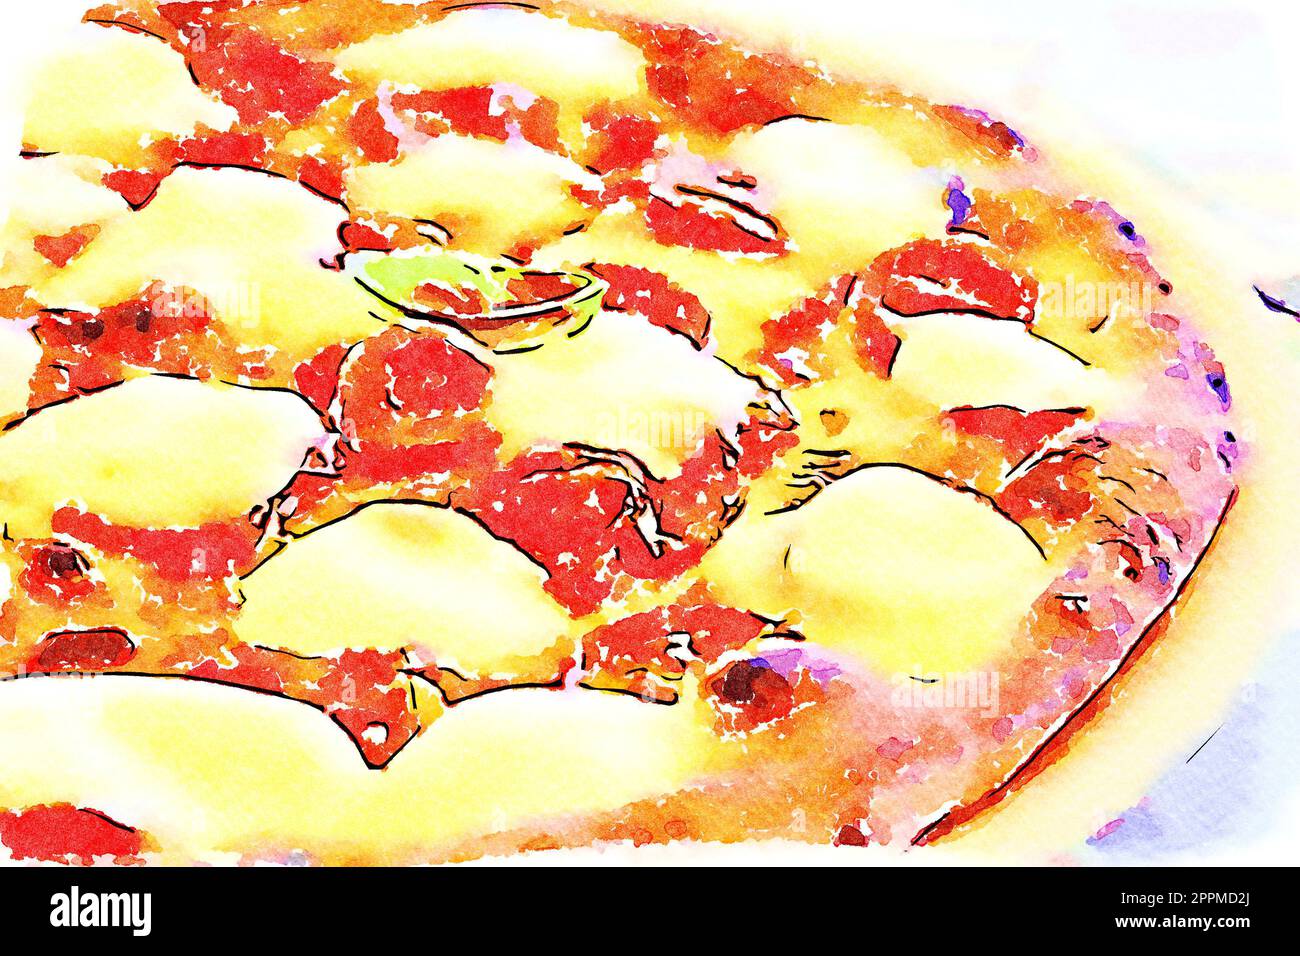 Illustration créative dans un design d'aquarelle vintage - Pizza Margherita avec fromage Mozzarella, basilic et tomates. Banque D'Images